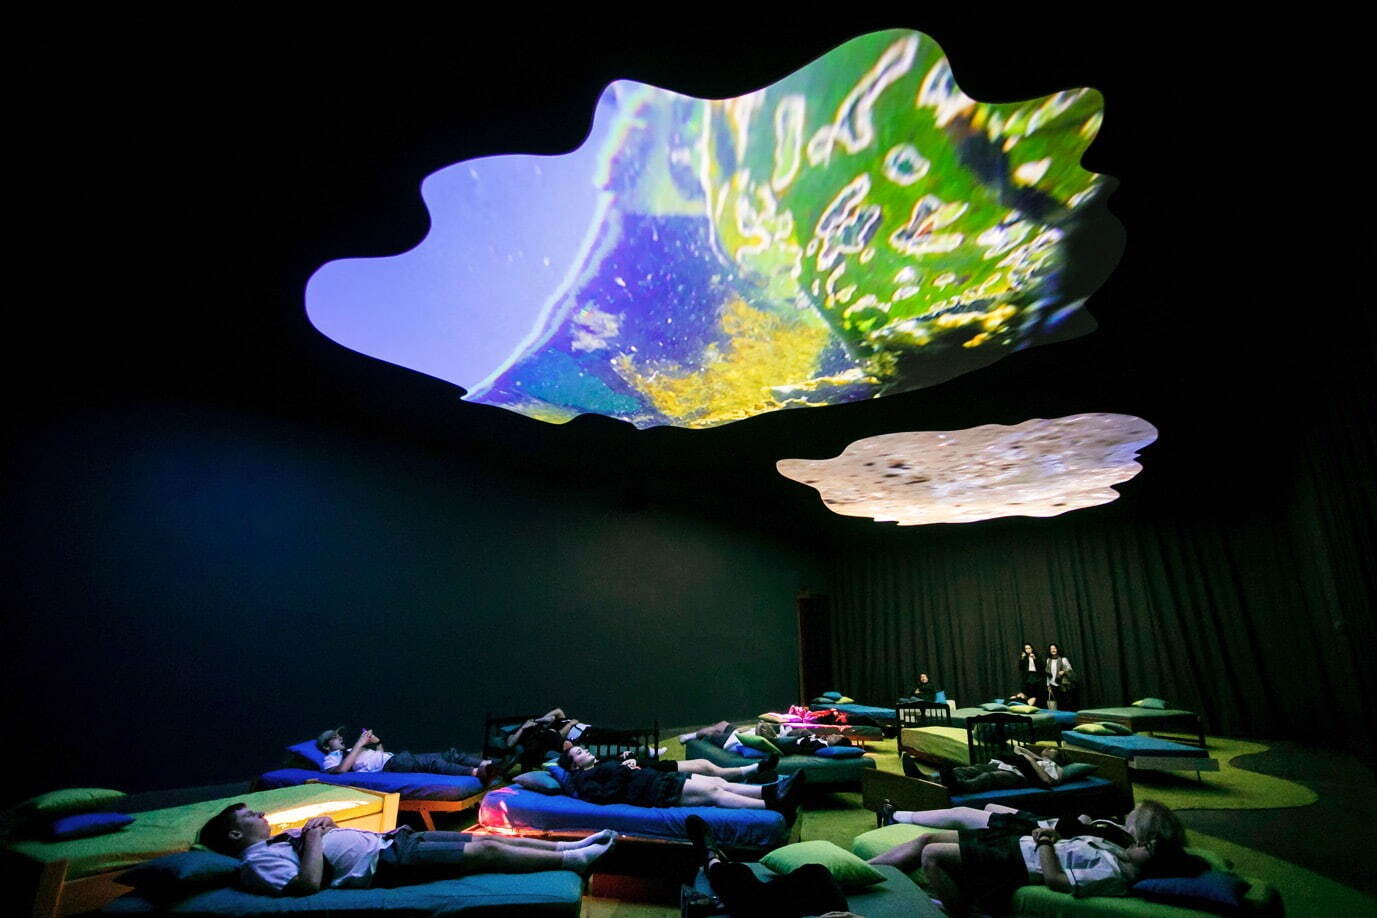 《4階から穏やかさへ向かって》2016年
4チャンネル・ヴィデオ・インスタレーション／ベッド、枕(13分23秒、8分11秒、8分11秒)
オーストラリア現代美術館での展示風景、2017年 Photo: Ken Leanfore